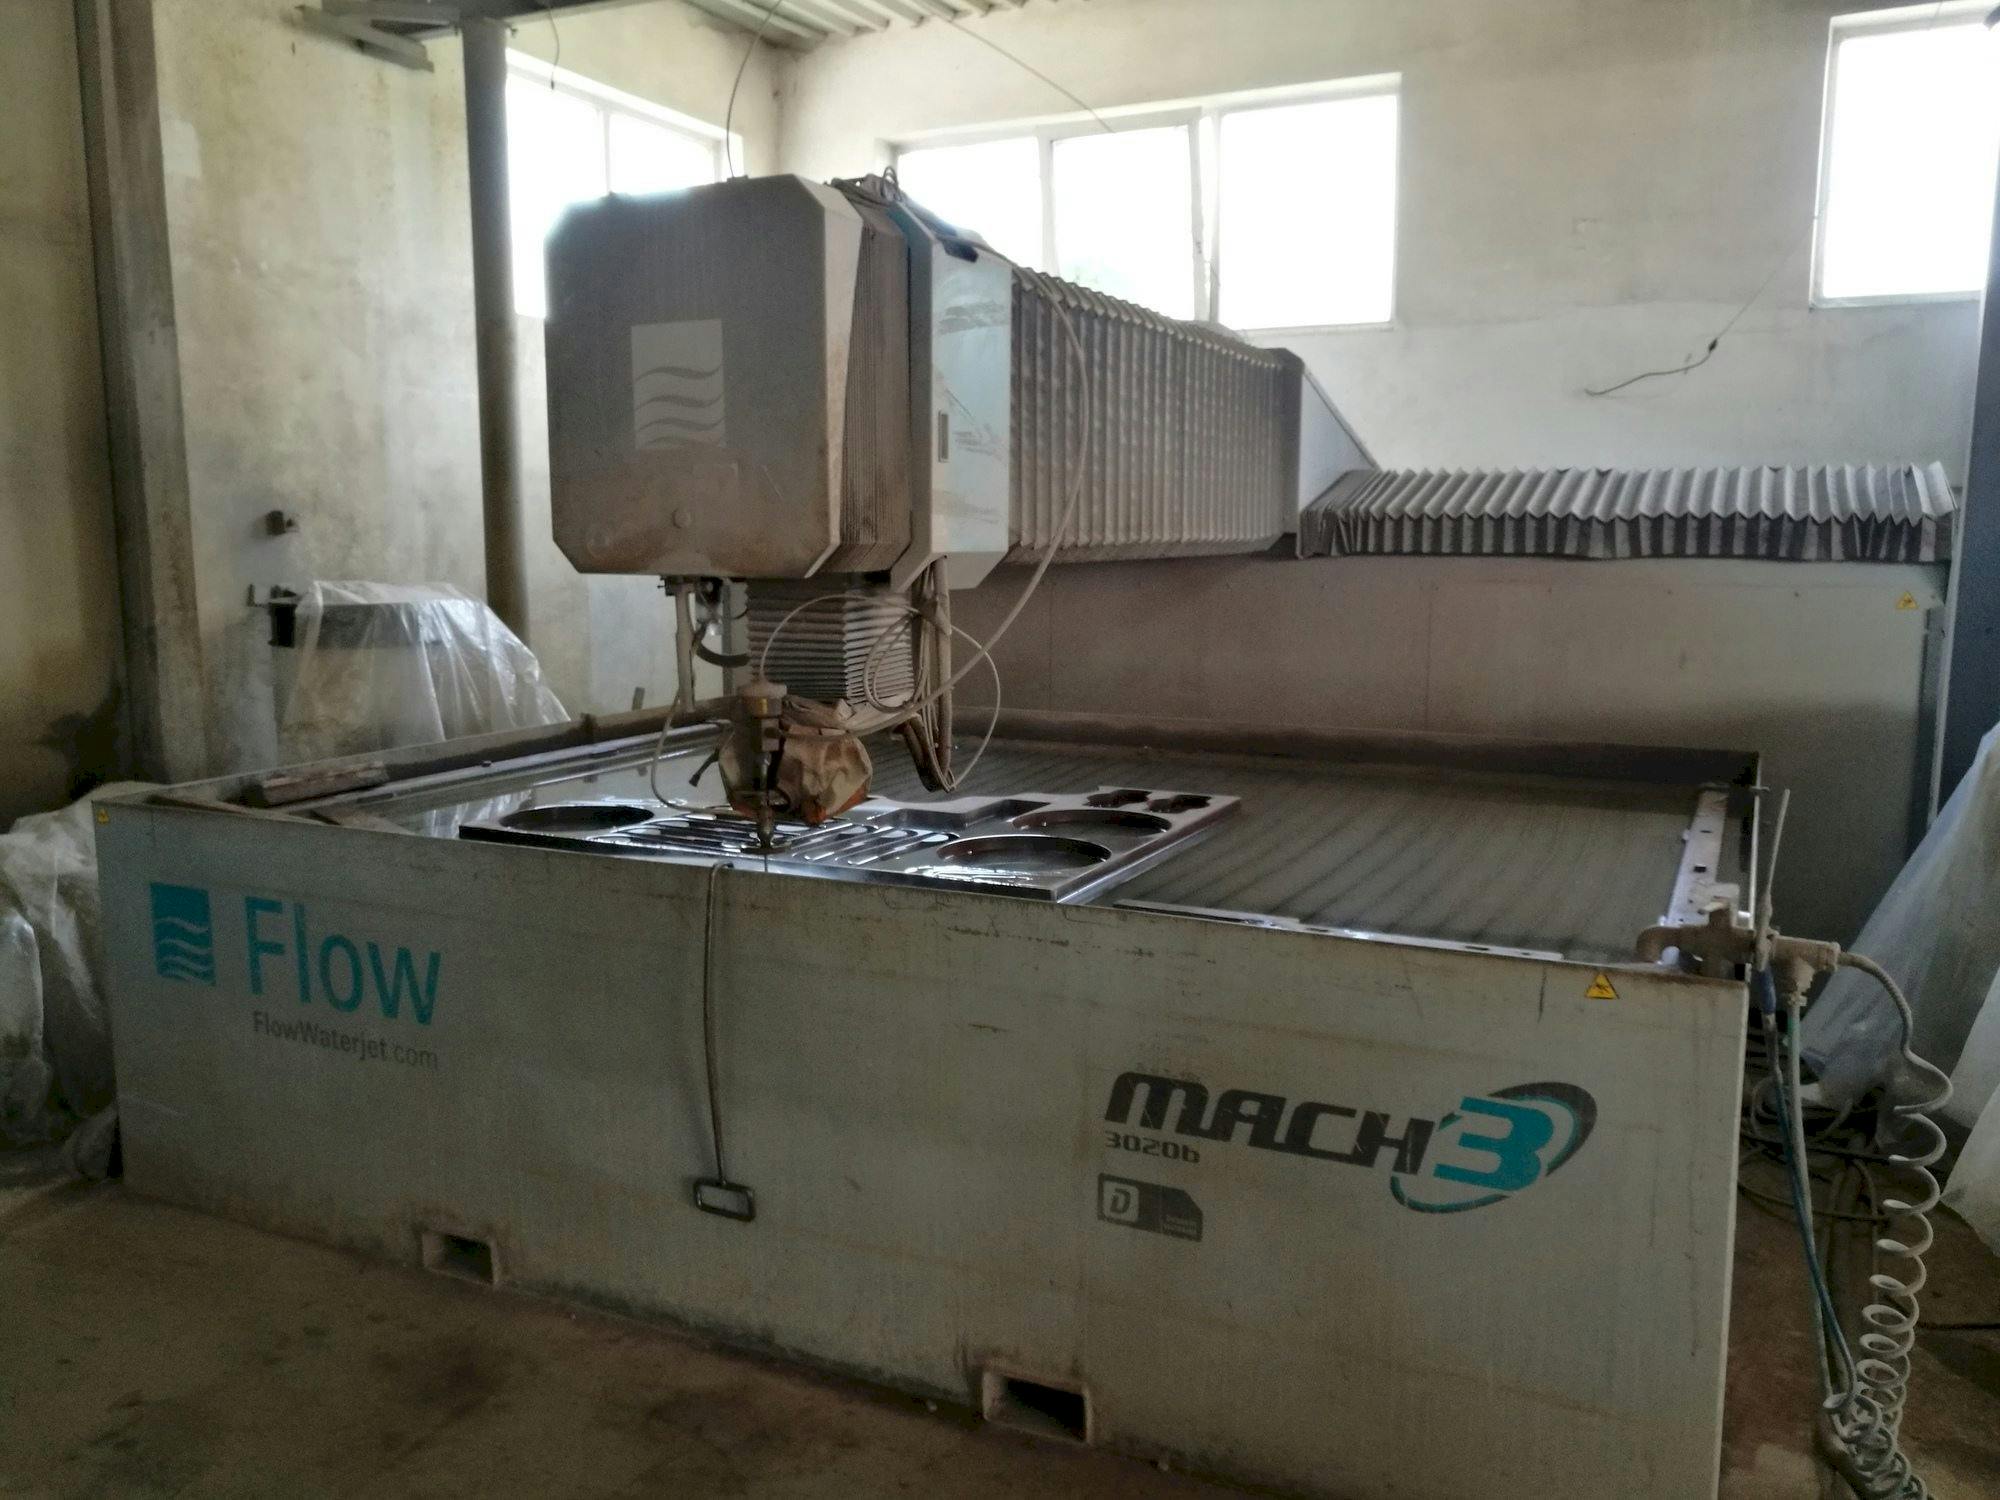 Prikaz  stroja Flow Mach3-3020b  sprijeda